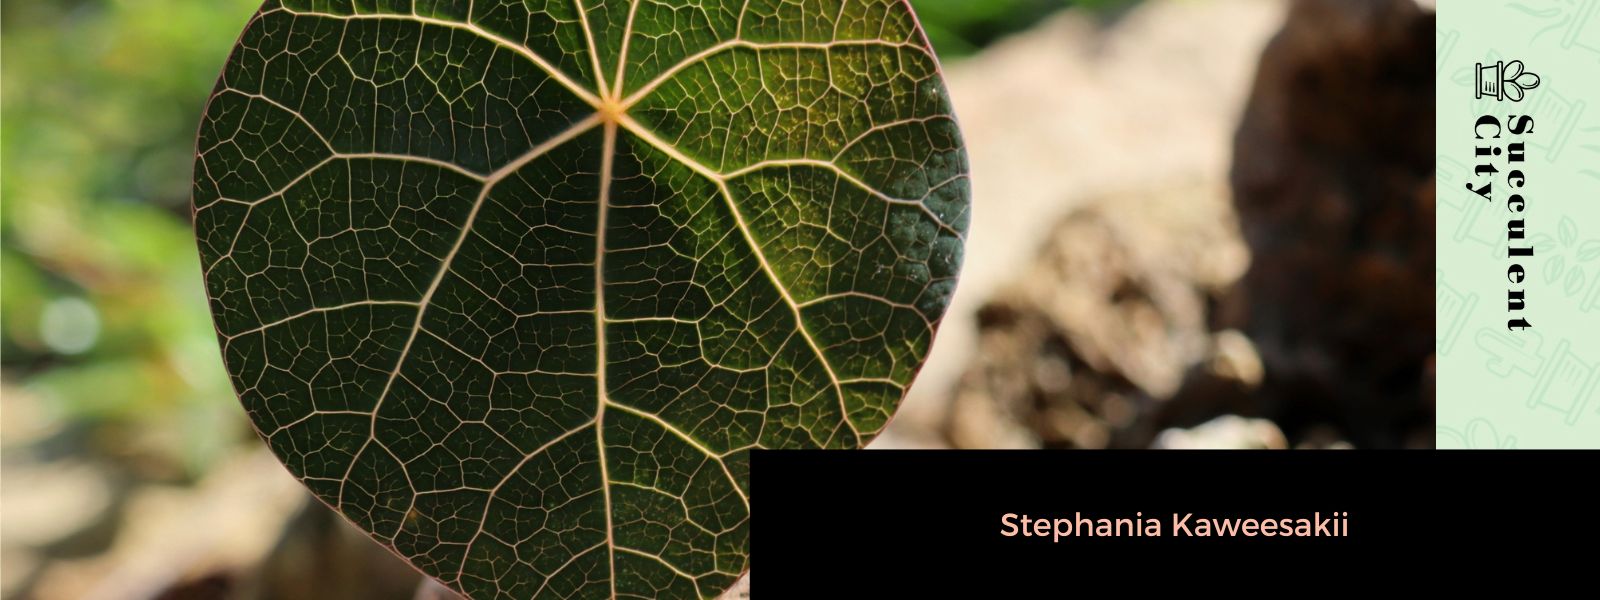 Stephania Kaweesakii: una planta trepadora rara y en peligro de extinción